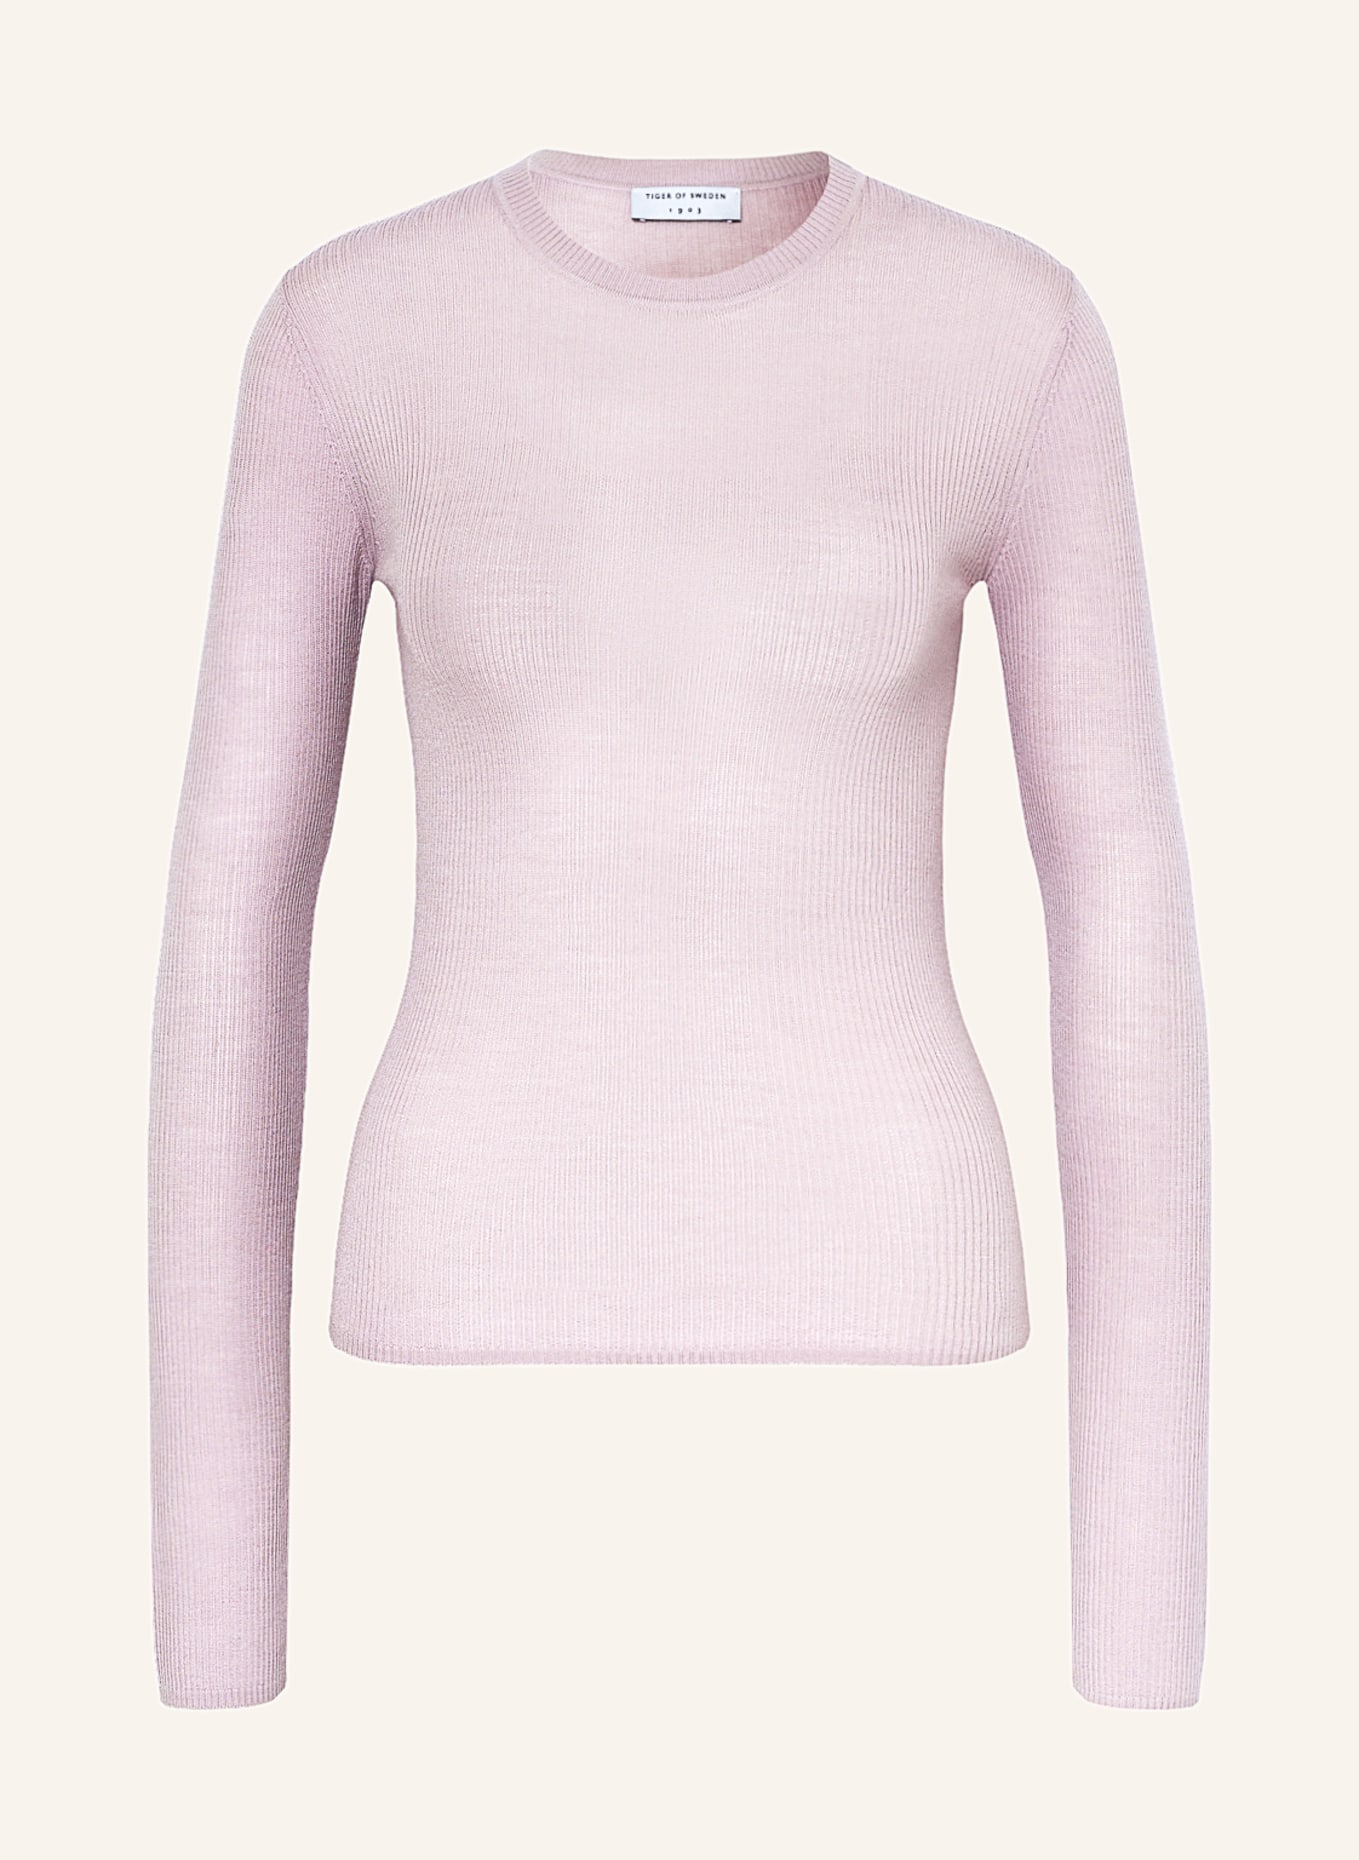 TIGER OF SWEDEN Sweater OVIE, Color: ROSE (Image 1)